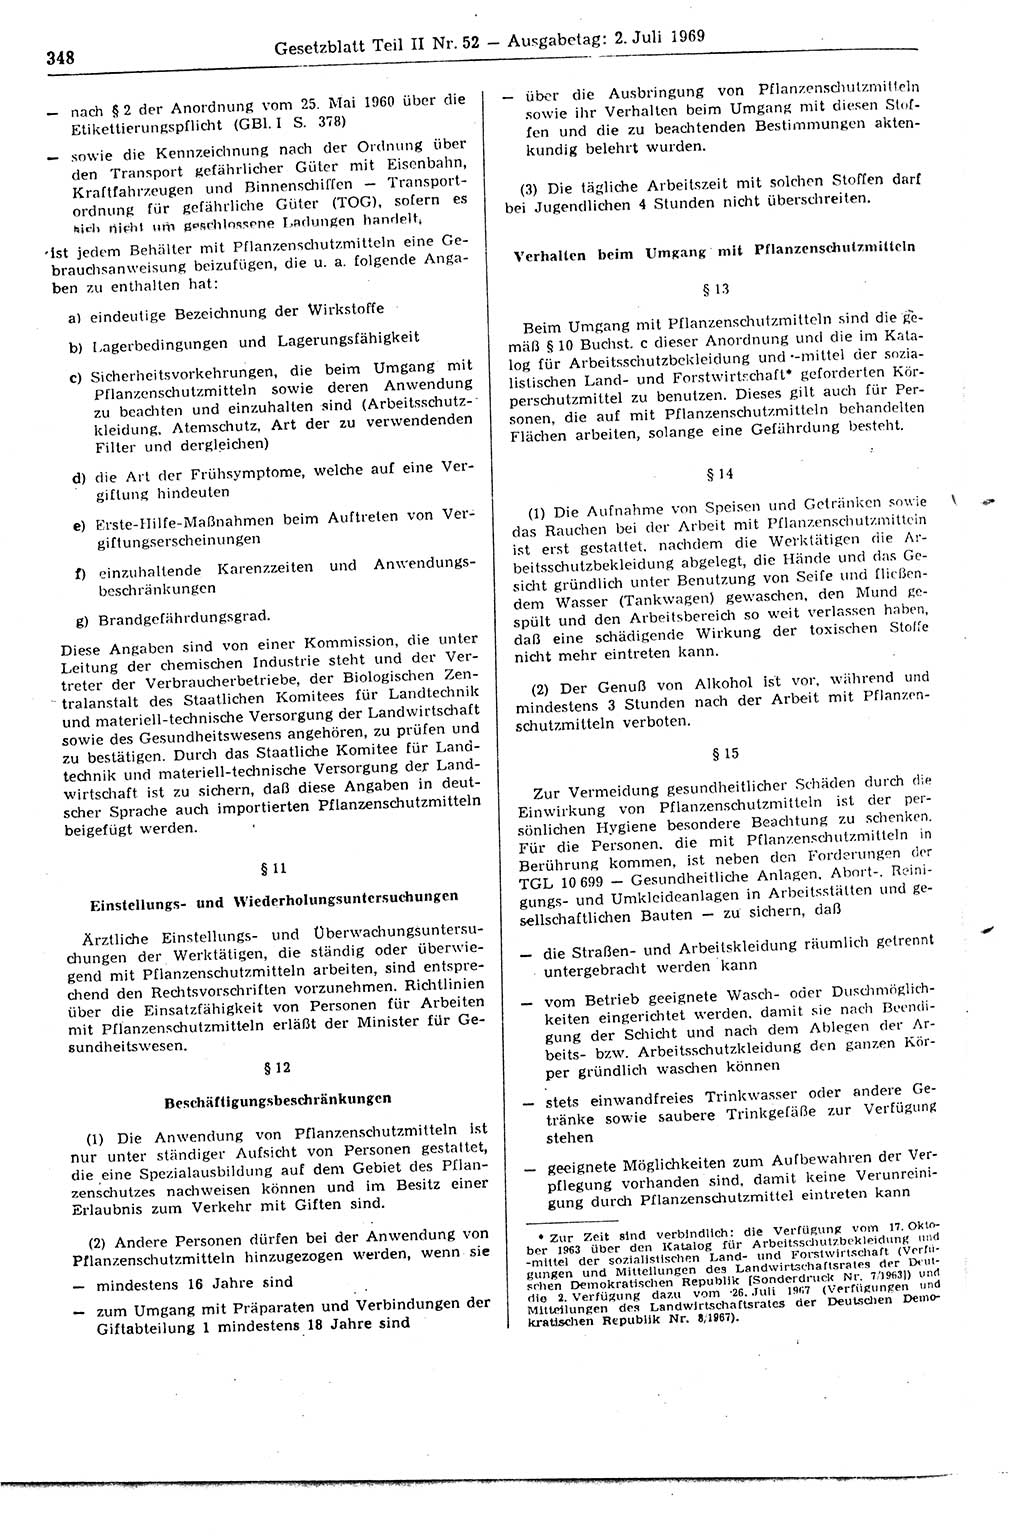 Gesetzblatt (GBl.) der Deutschen Demokratischen Republik (DDR) Teil ⅠⅠ 1969, Seite 348 (GBl. DDR ⅠⅠ 1969, S. 348)